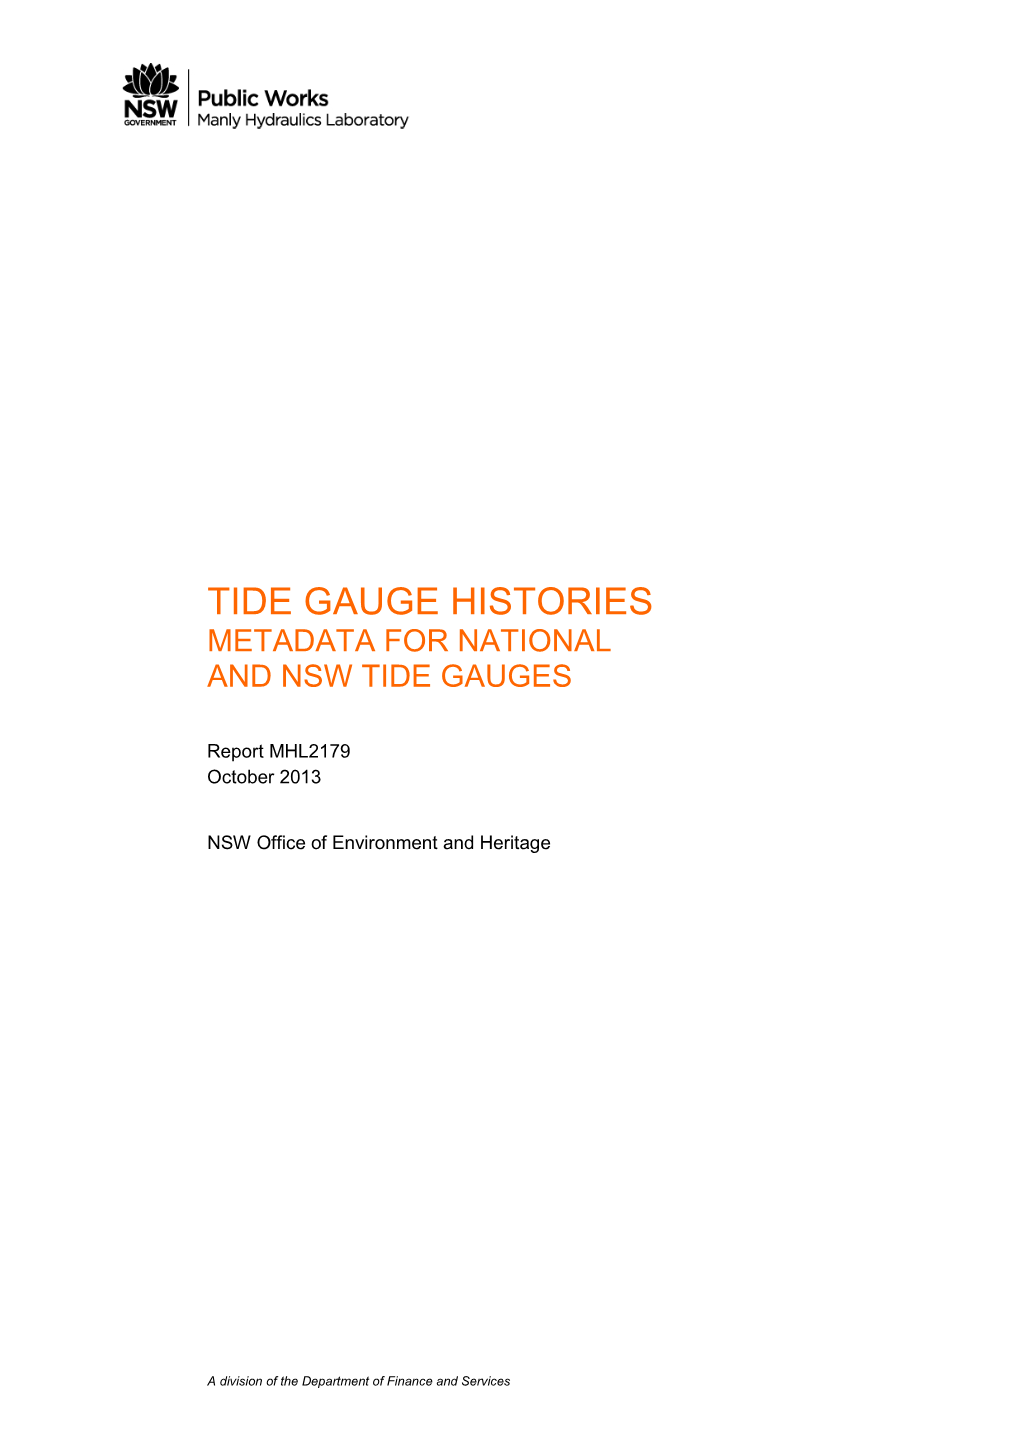 Tide Gauge Histories Metadata for National and Nsw Tide Gauges